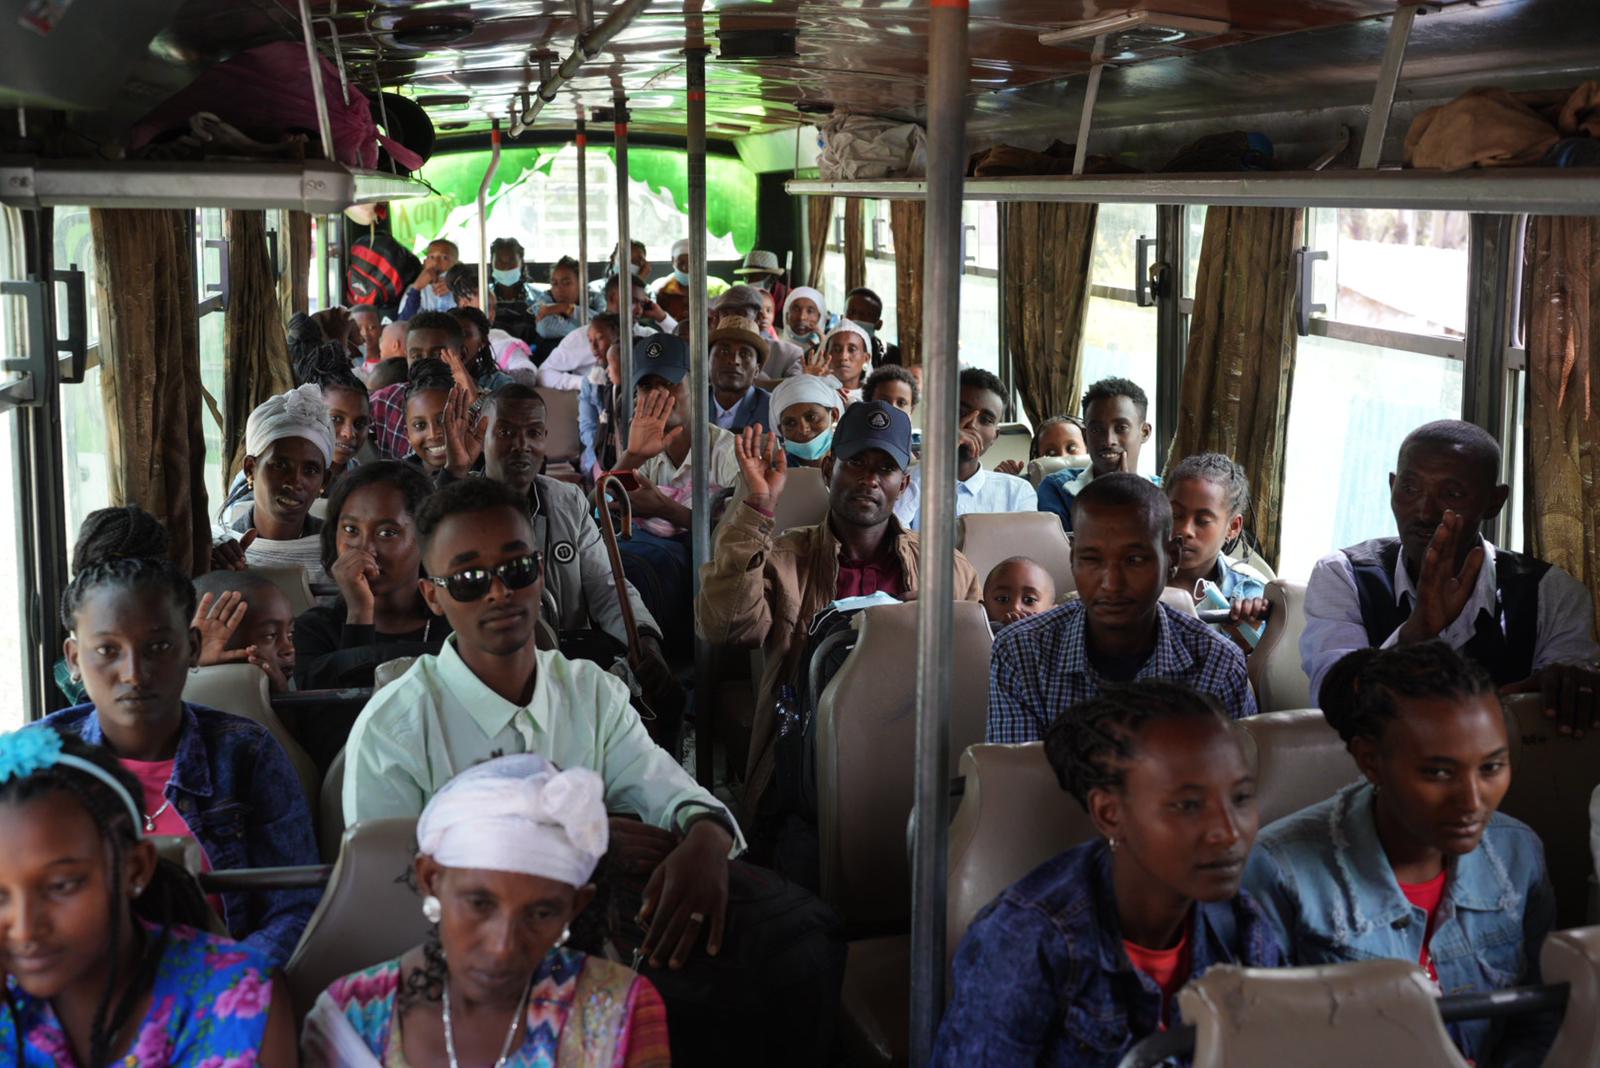 Bus full of Ethiopian olim waiting to making Aliyah to Israel